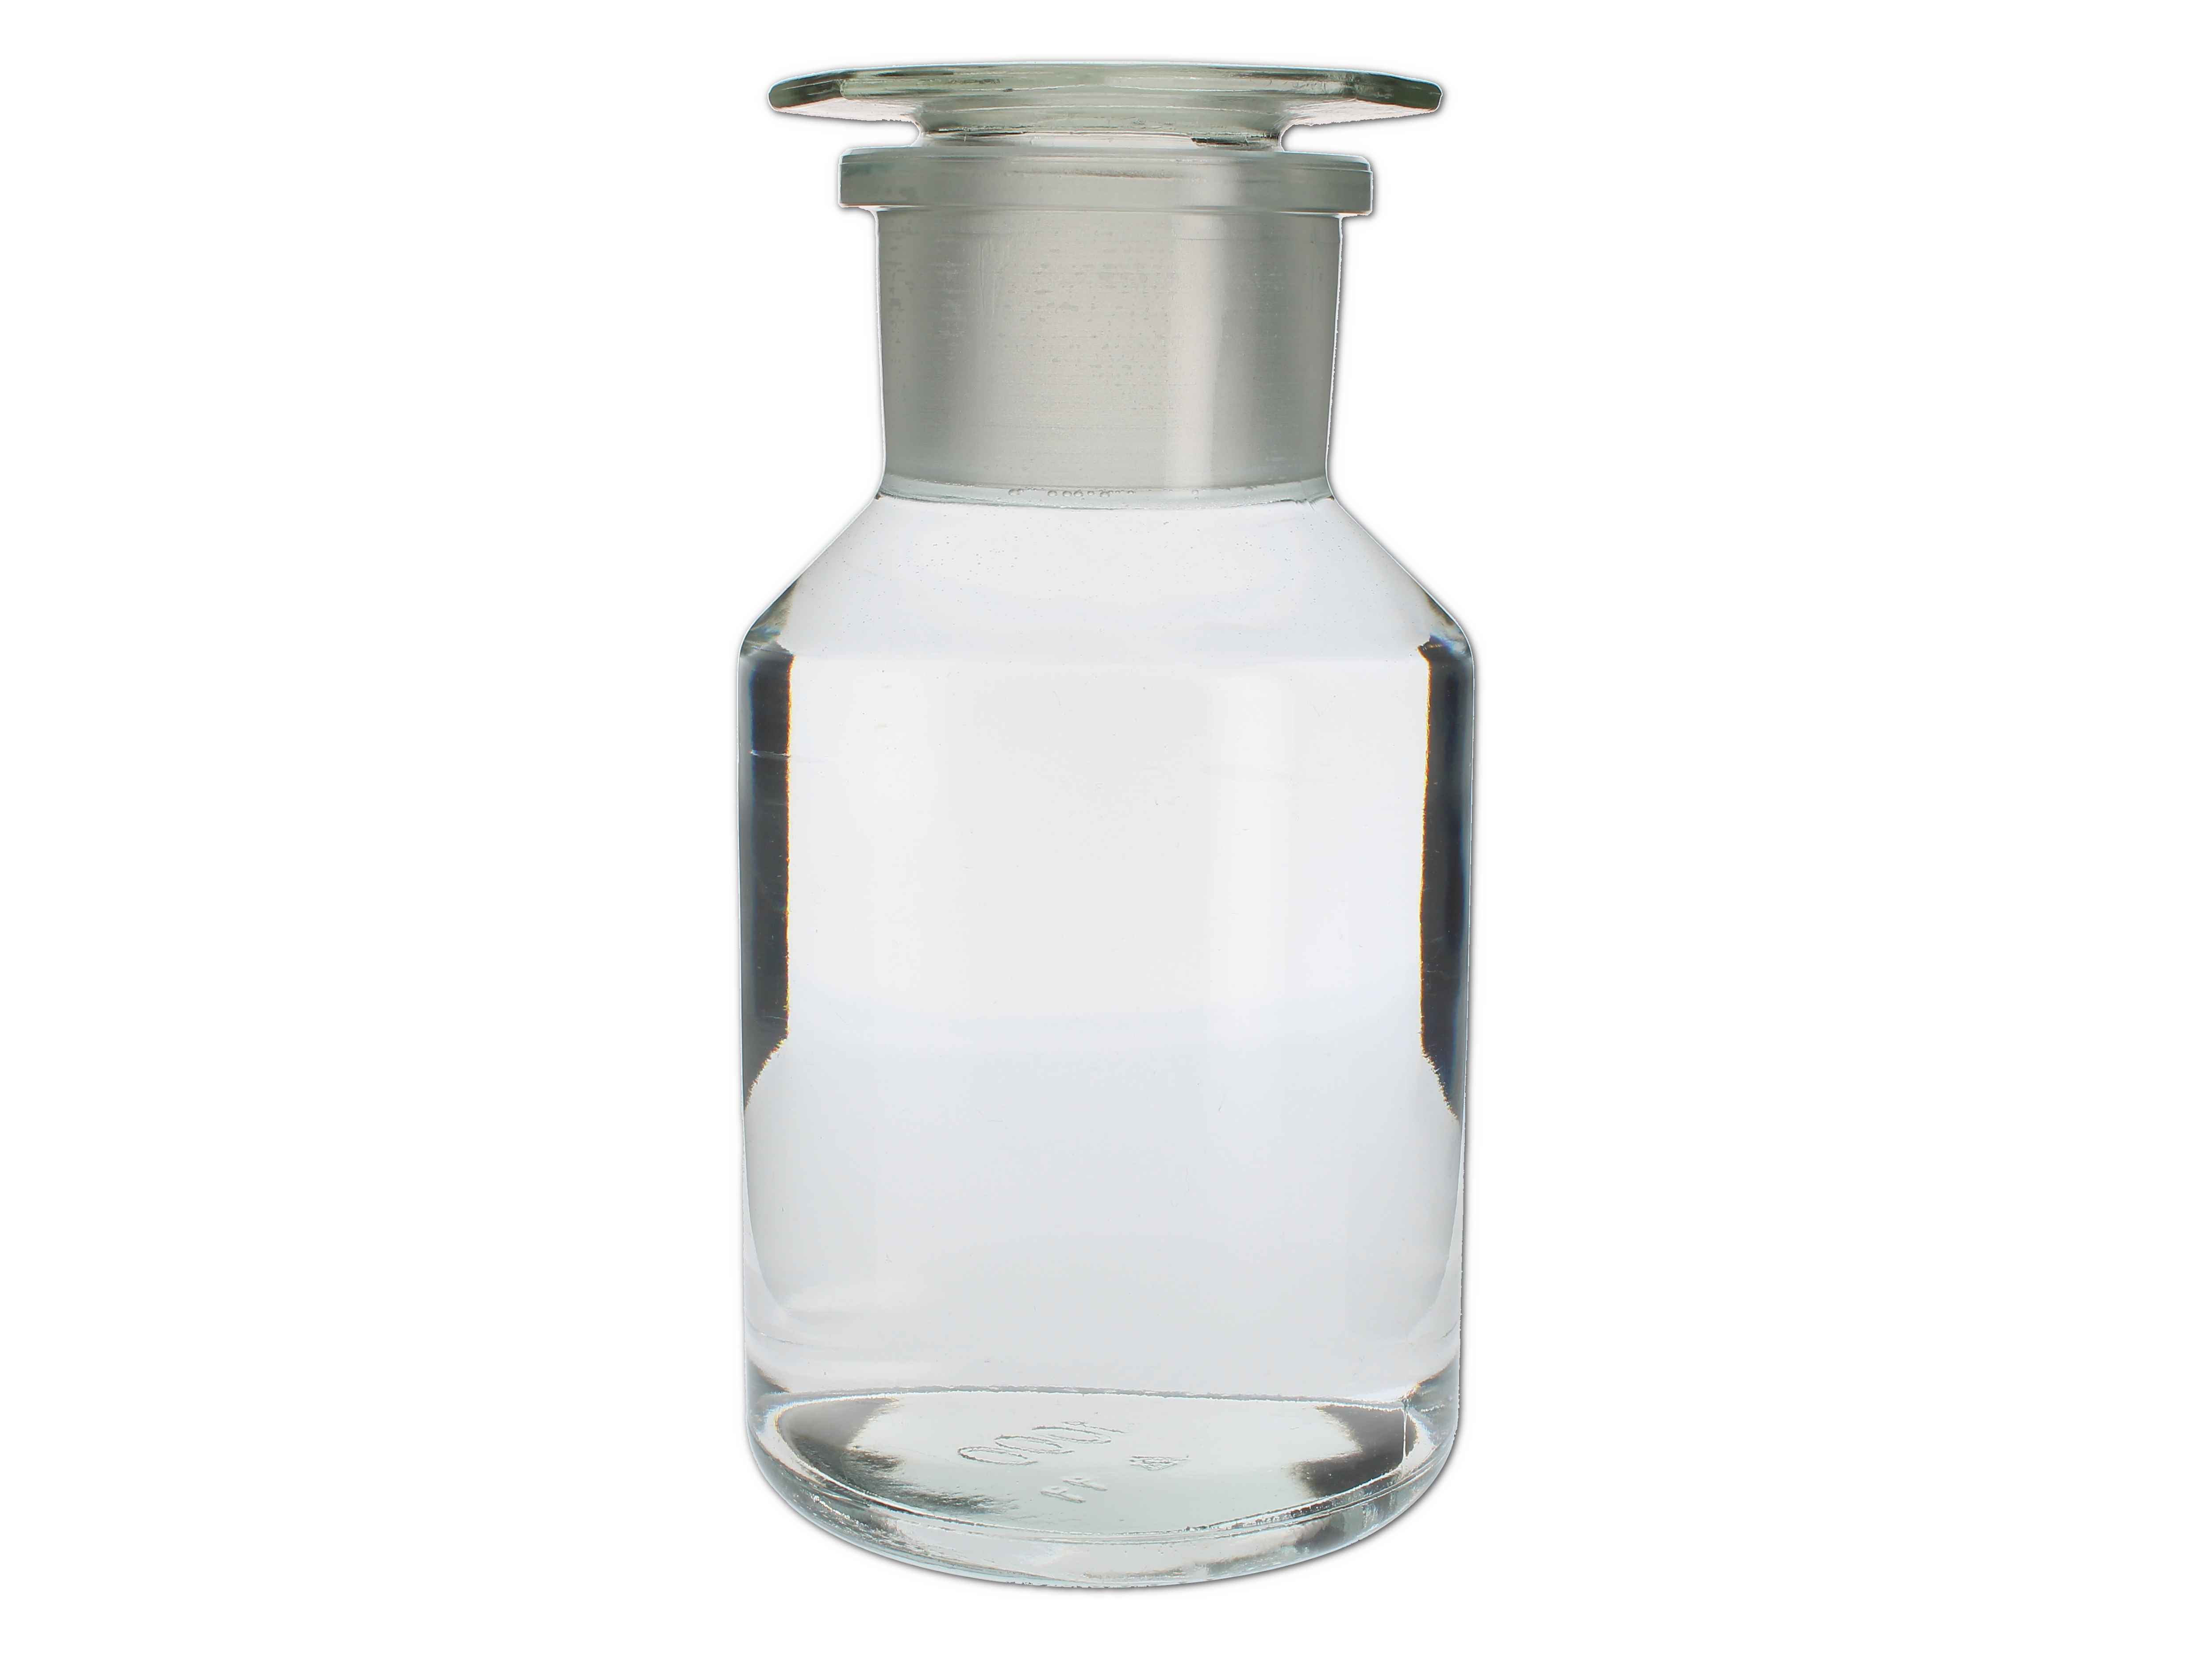    Pulverglas weiß mit Glasstopfen, rund - 1000 ML